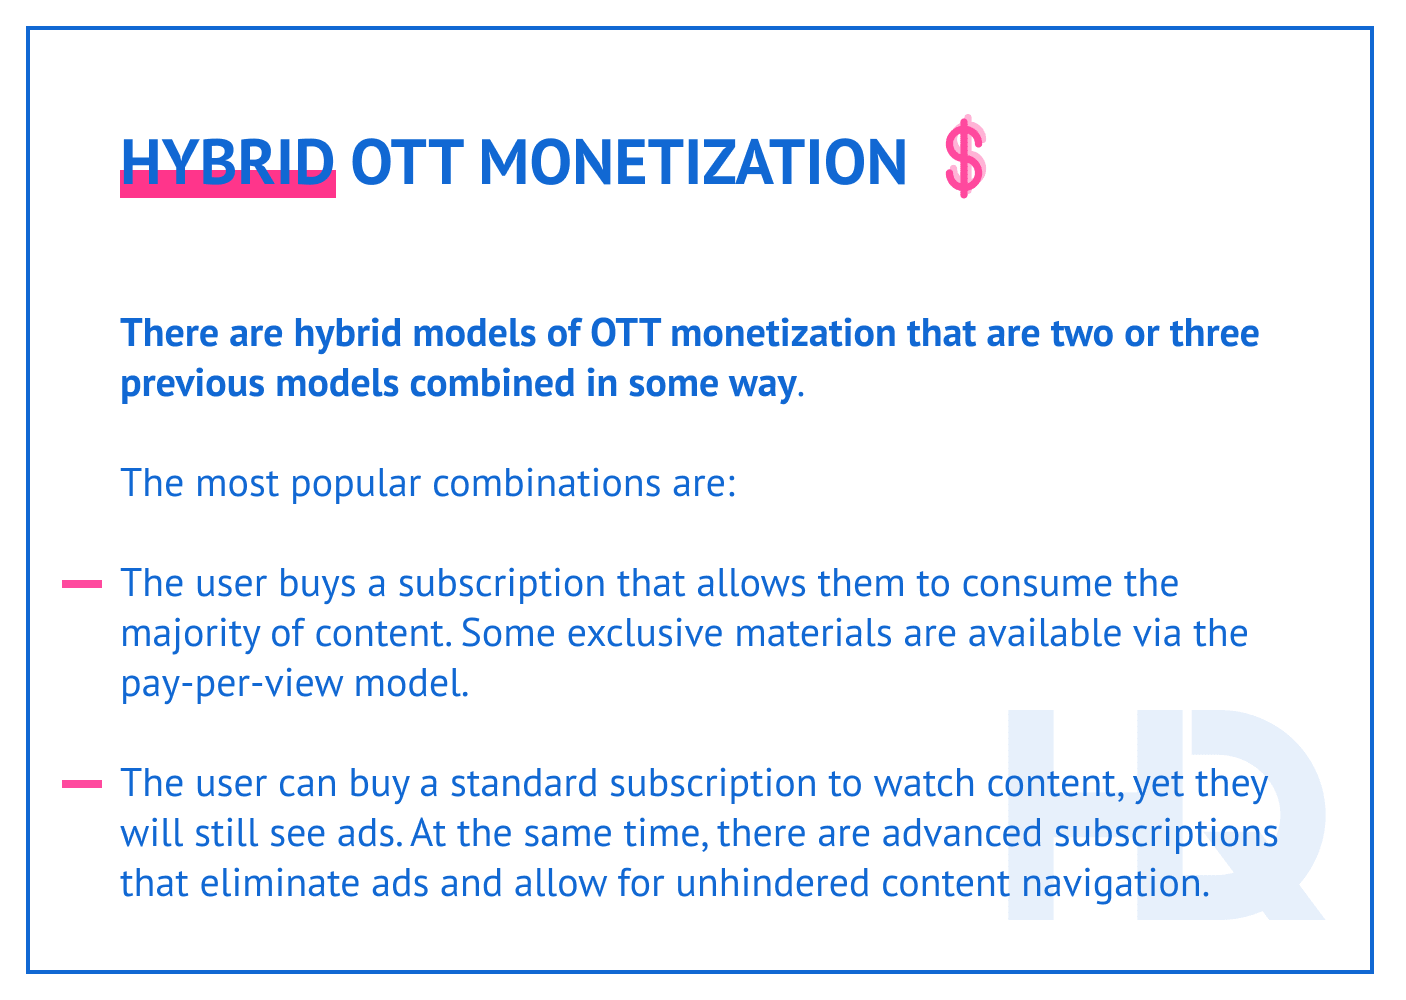 Hybrid OTT monetization.